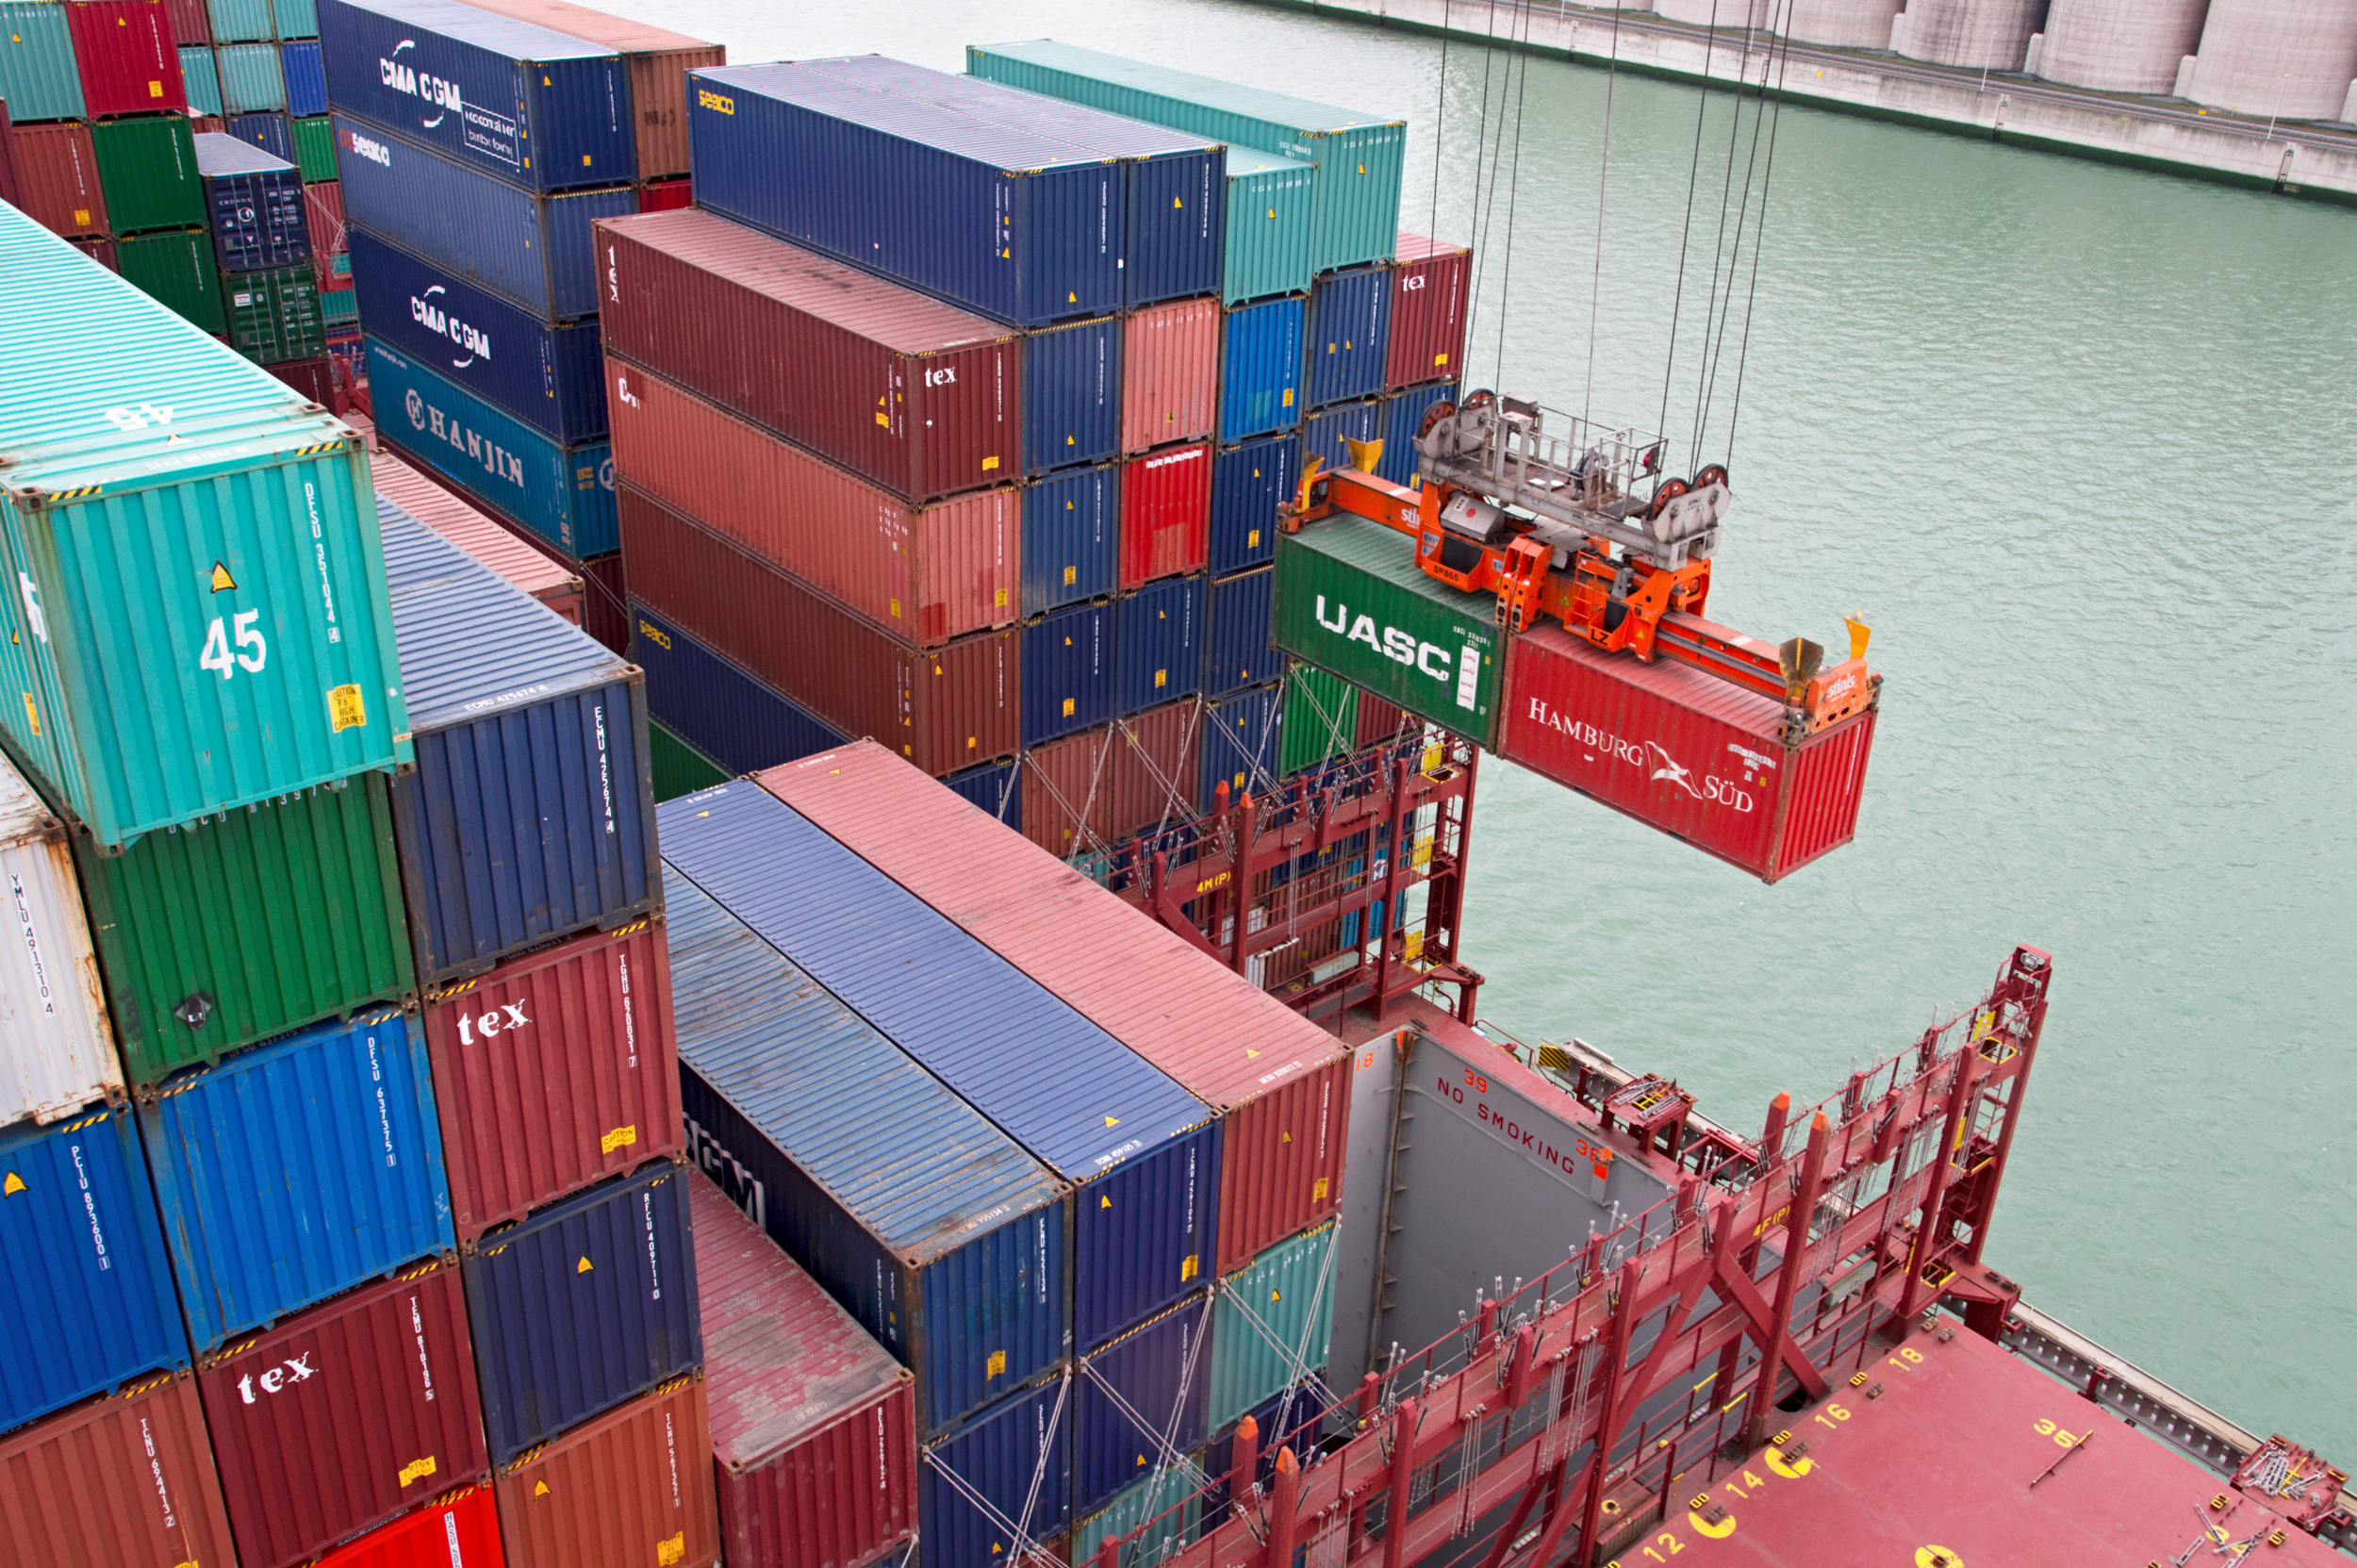 Vrachtcontainers worden gelost in de Rotterdamse haven.